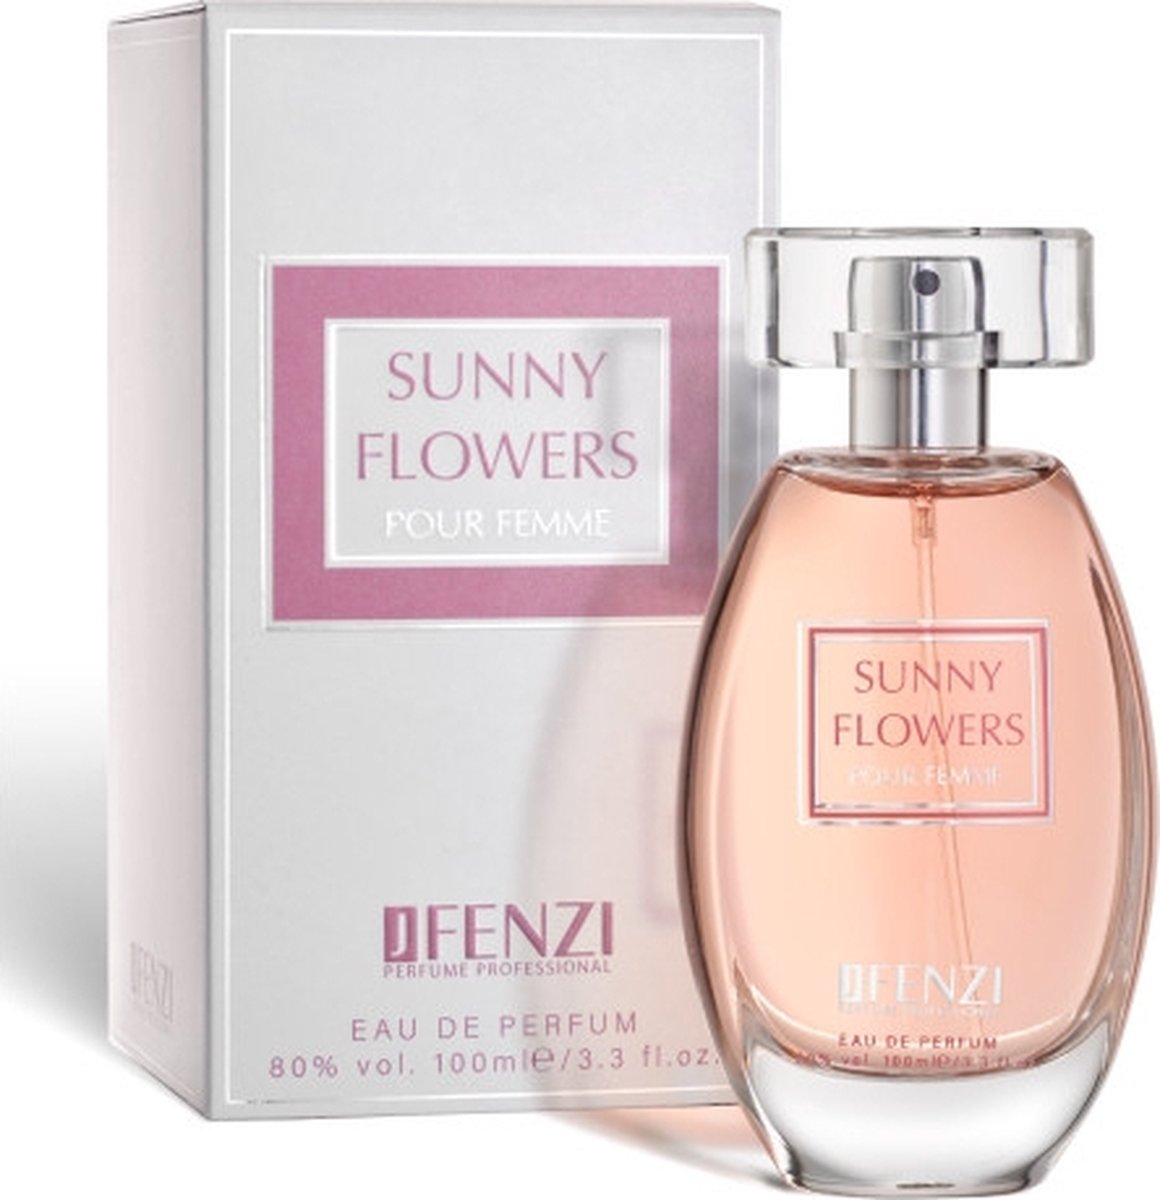 Bloemige merkgeur voor dames, JFenzi Sunny Flowers - eau de parfum - 100ml -